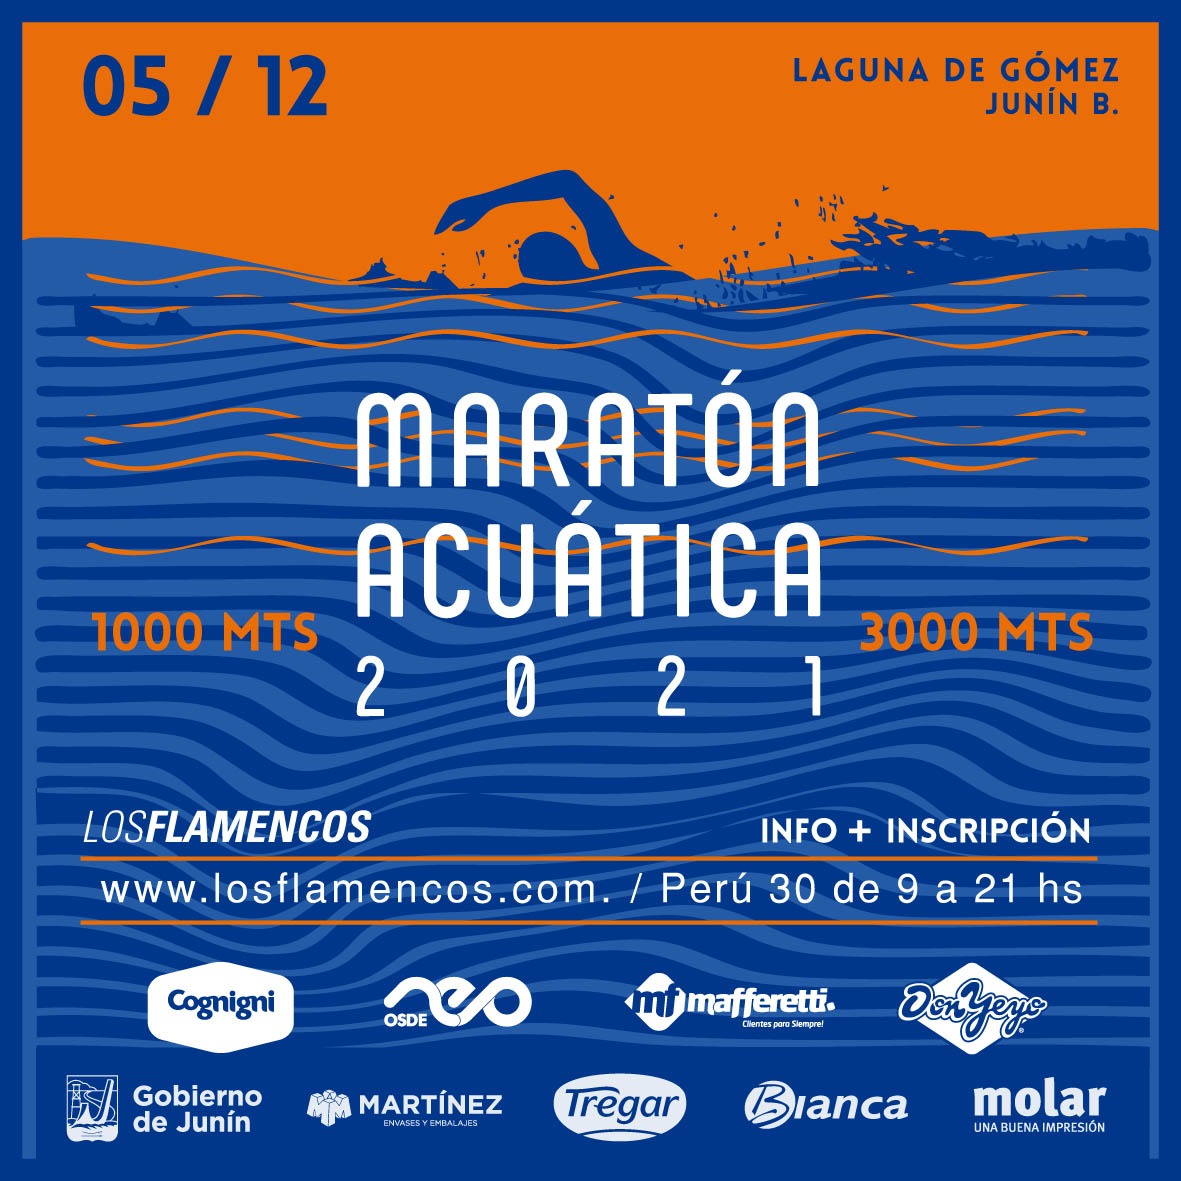 Se viene una maratón acuática en la Laguna de Gómez